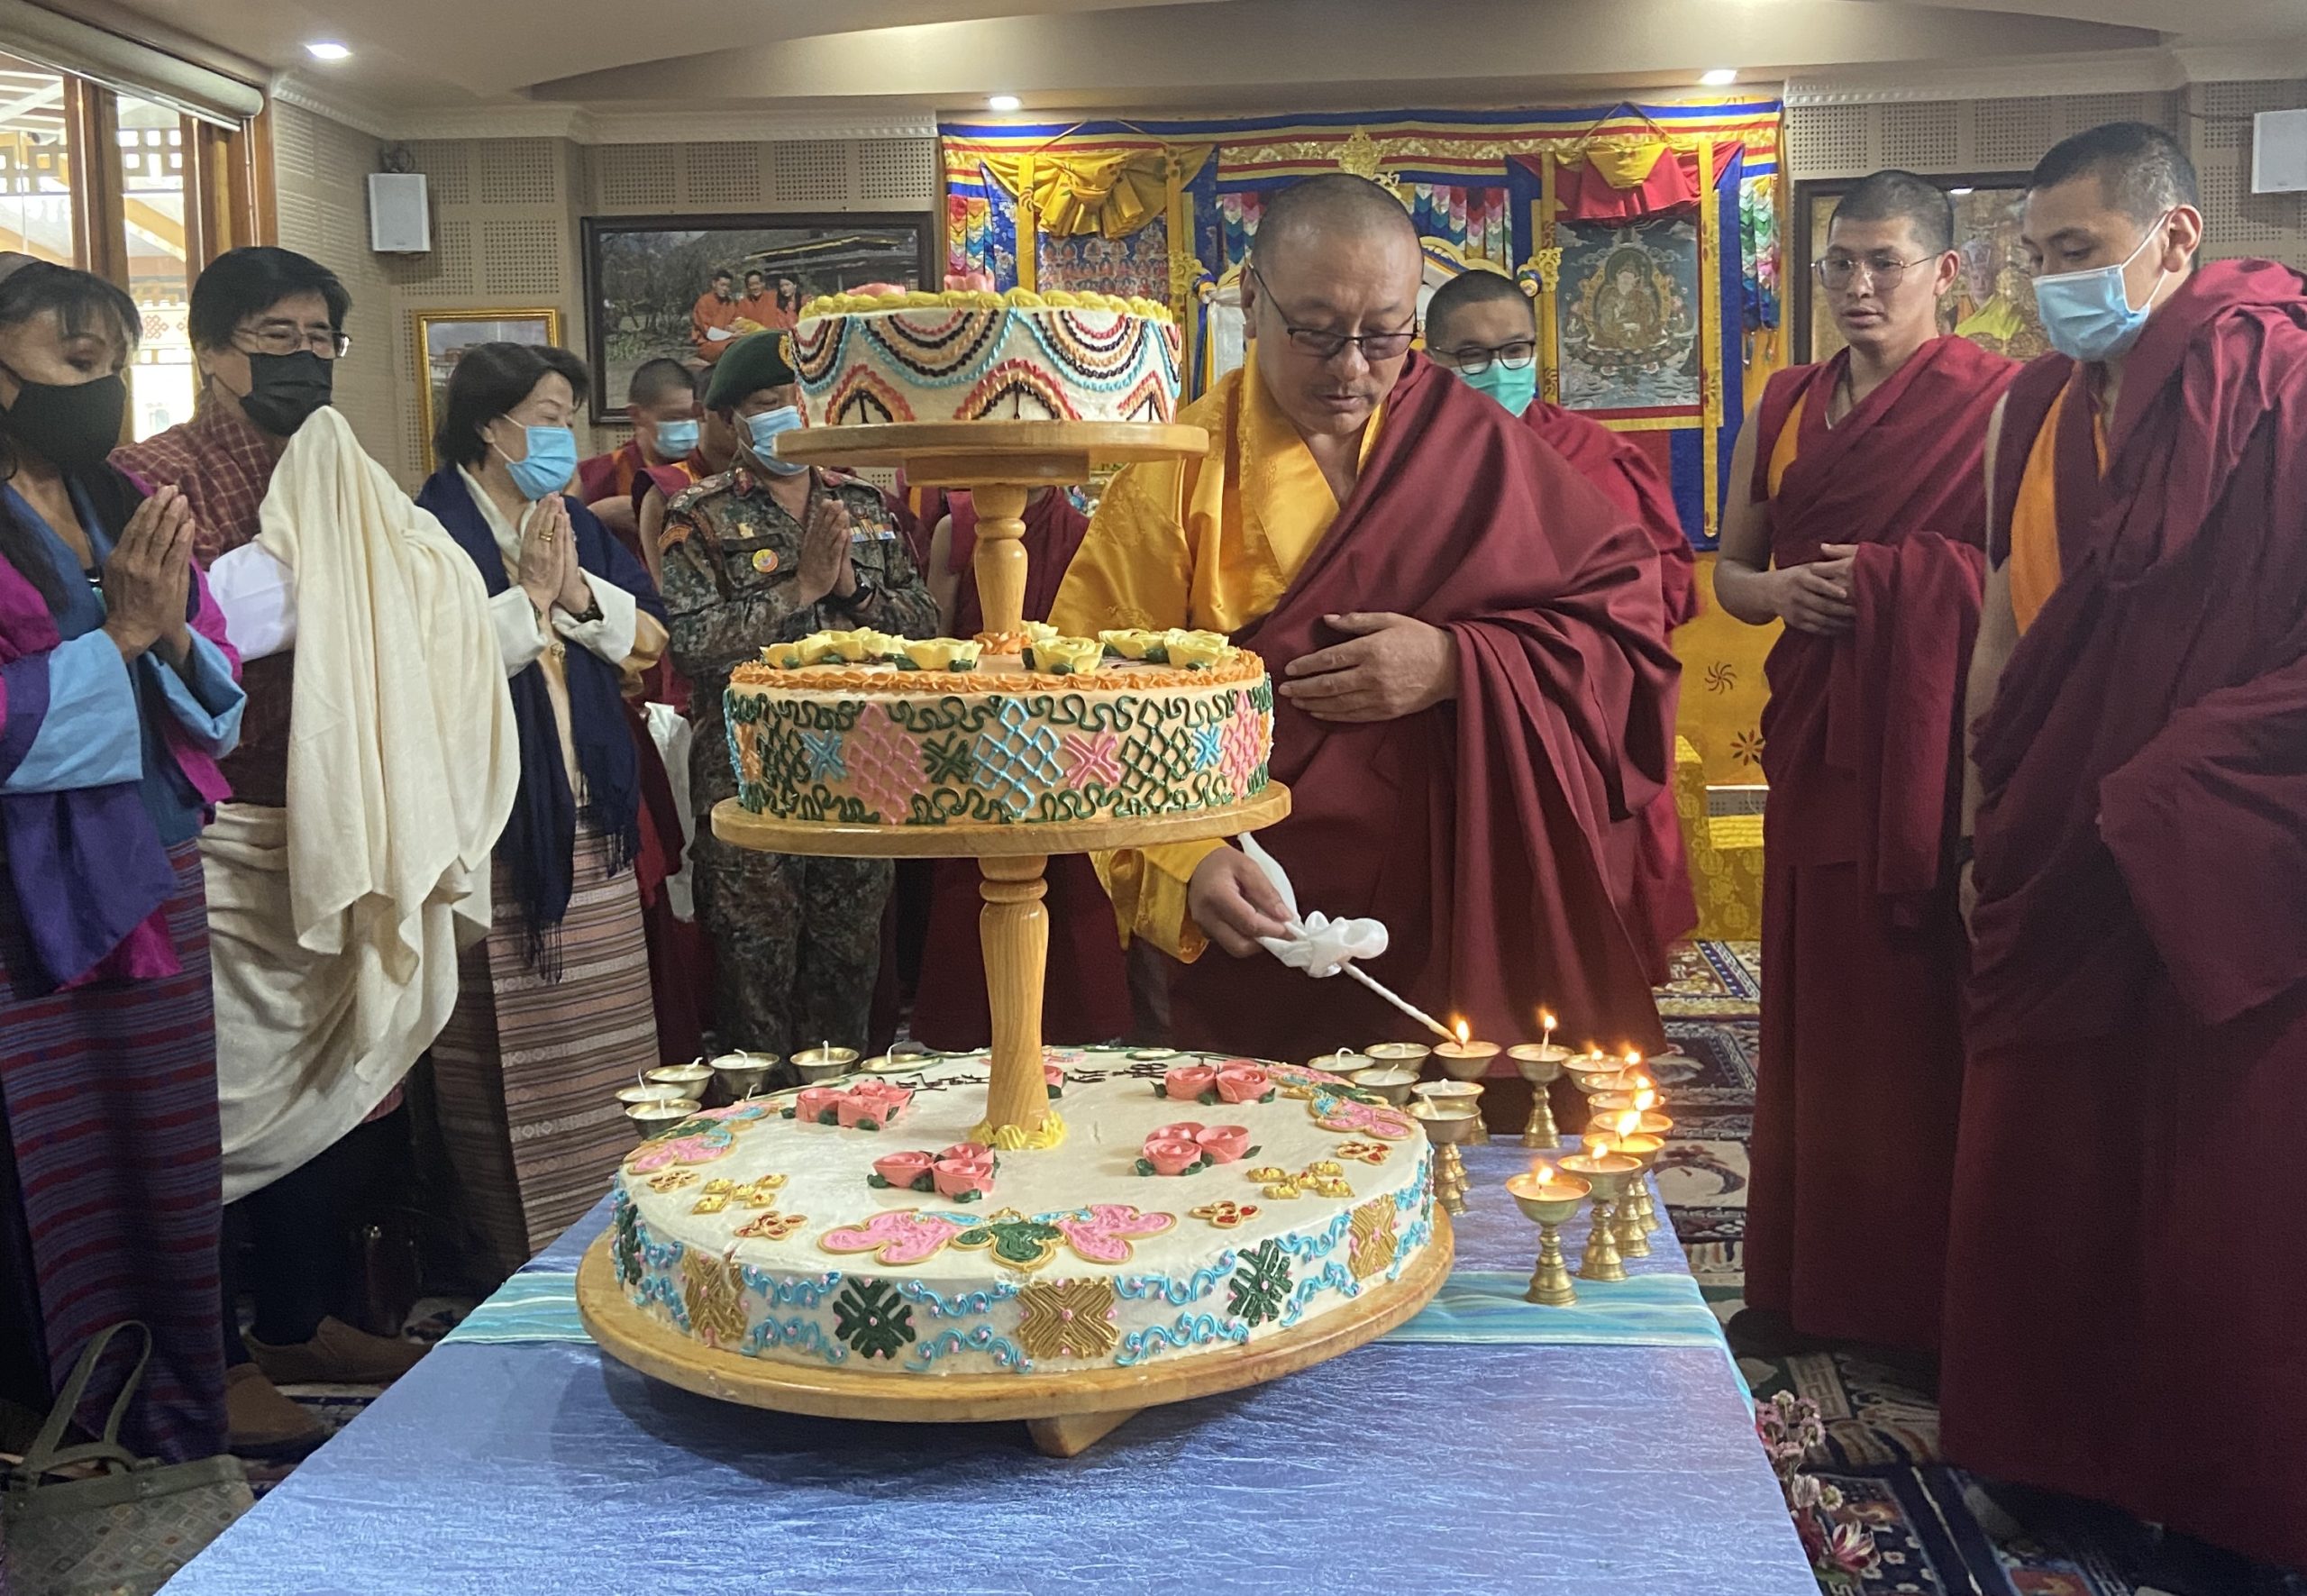 Celebrating Rinpoche’s 60th birthday